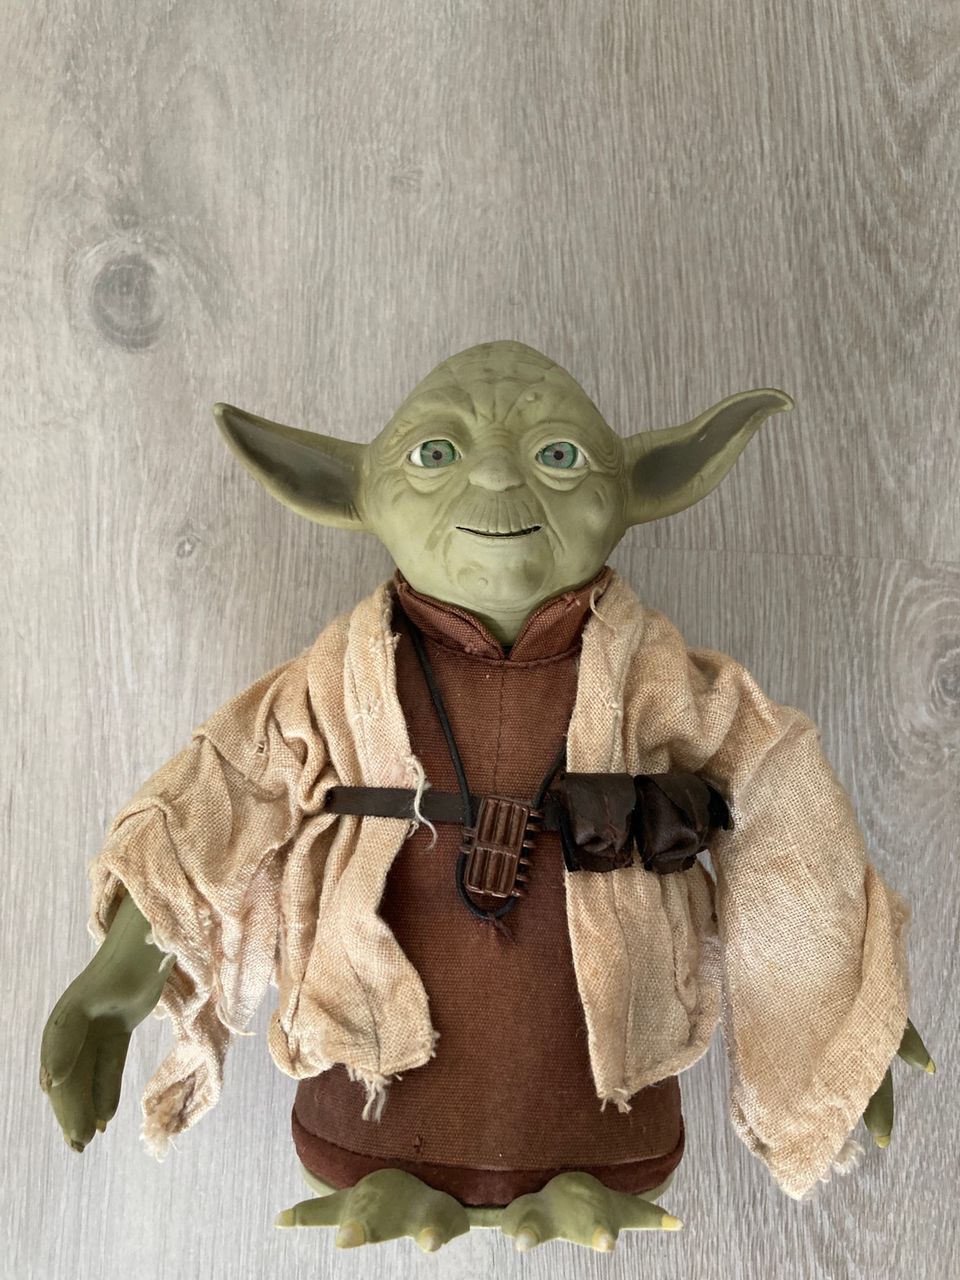 Star Wars Talking Yoda